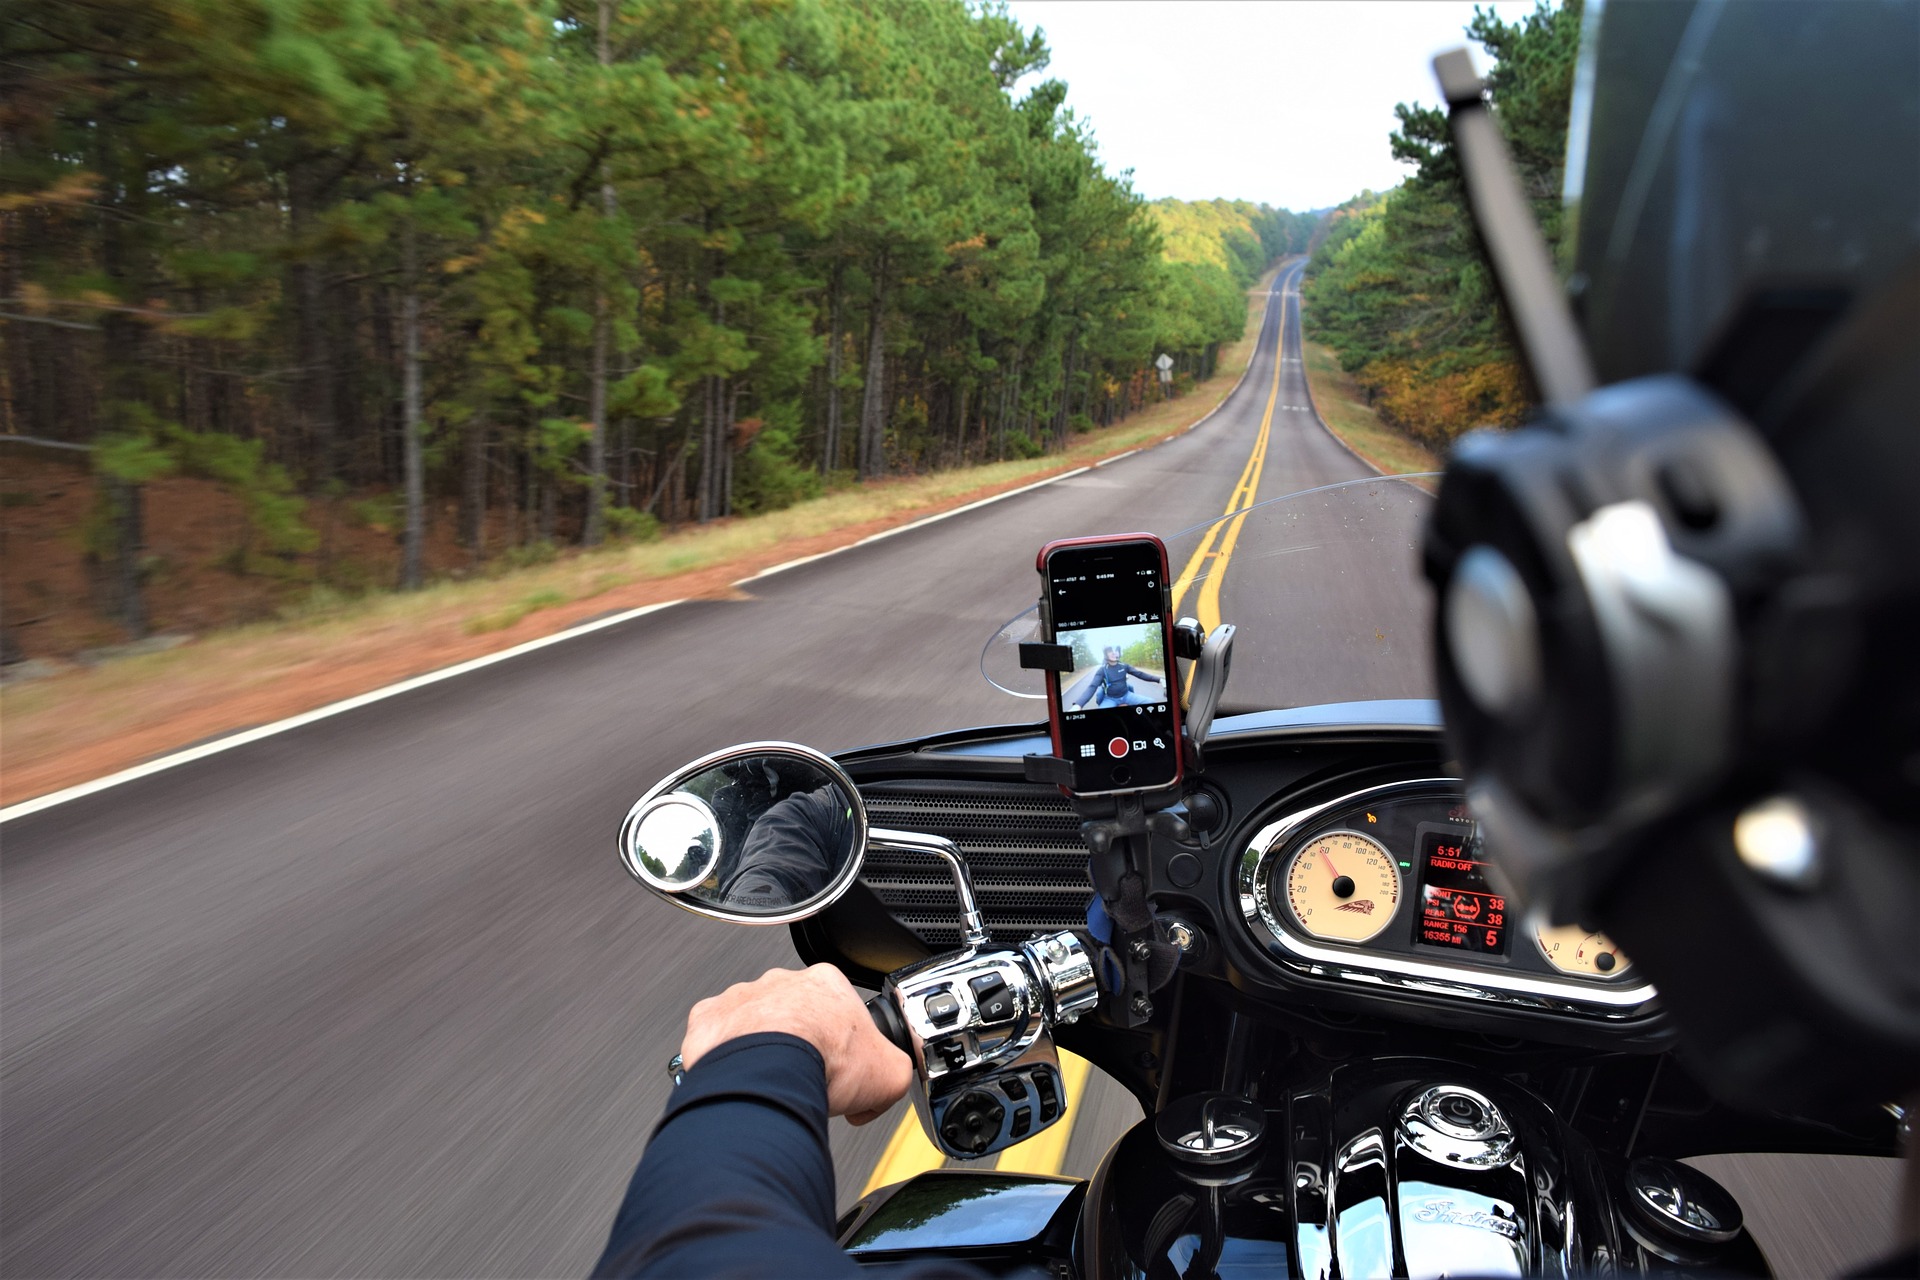 Vibrationen von Motorrädern können iPhone-Kameras zusetzen